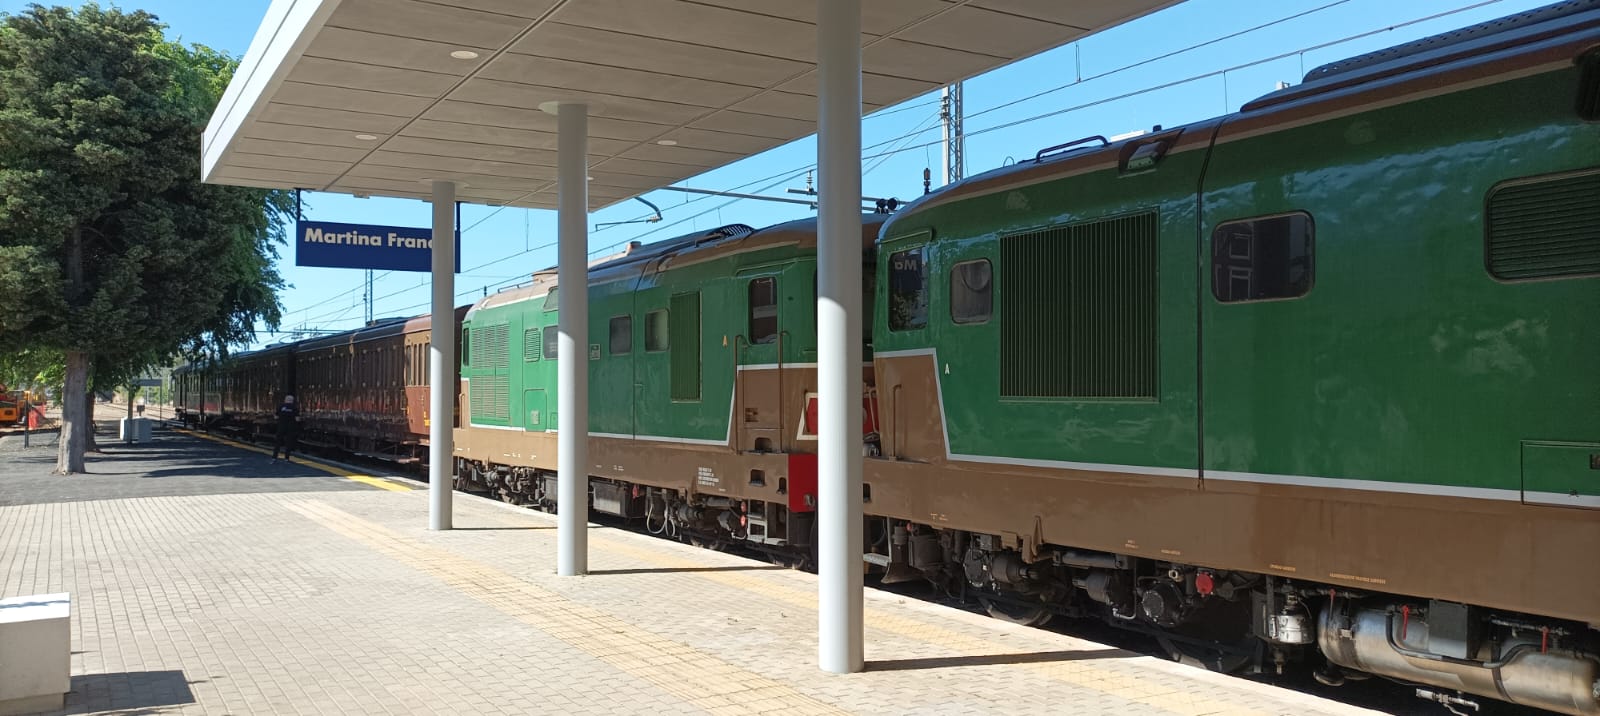 Il treno storico per la visita in Valle d’Itria nel pomeriggio. A Fasano il contro G7 Consorti da Alberobello a Martina Franca dopo il quartiere delle ceramiche di Grottaglie